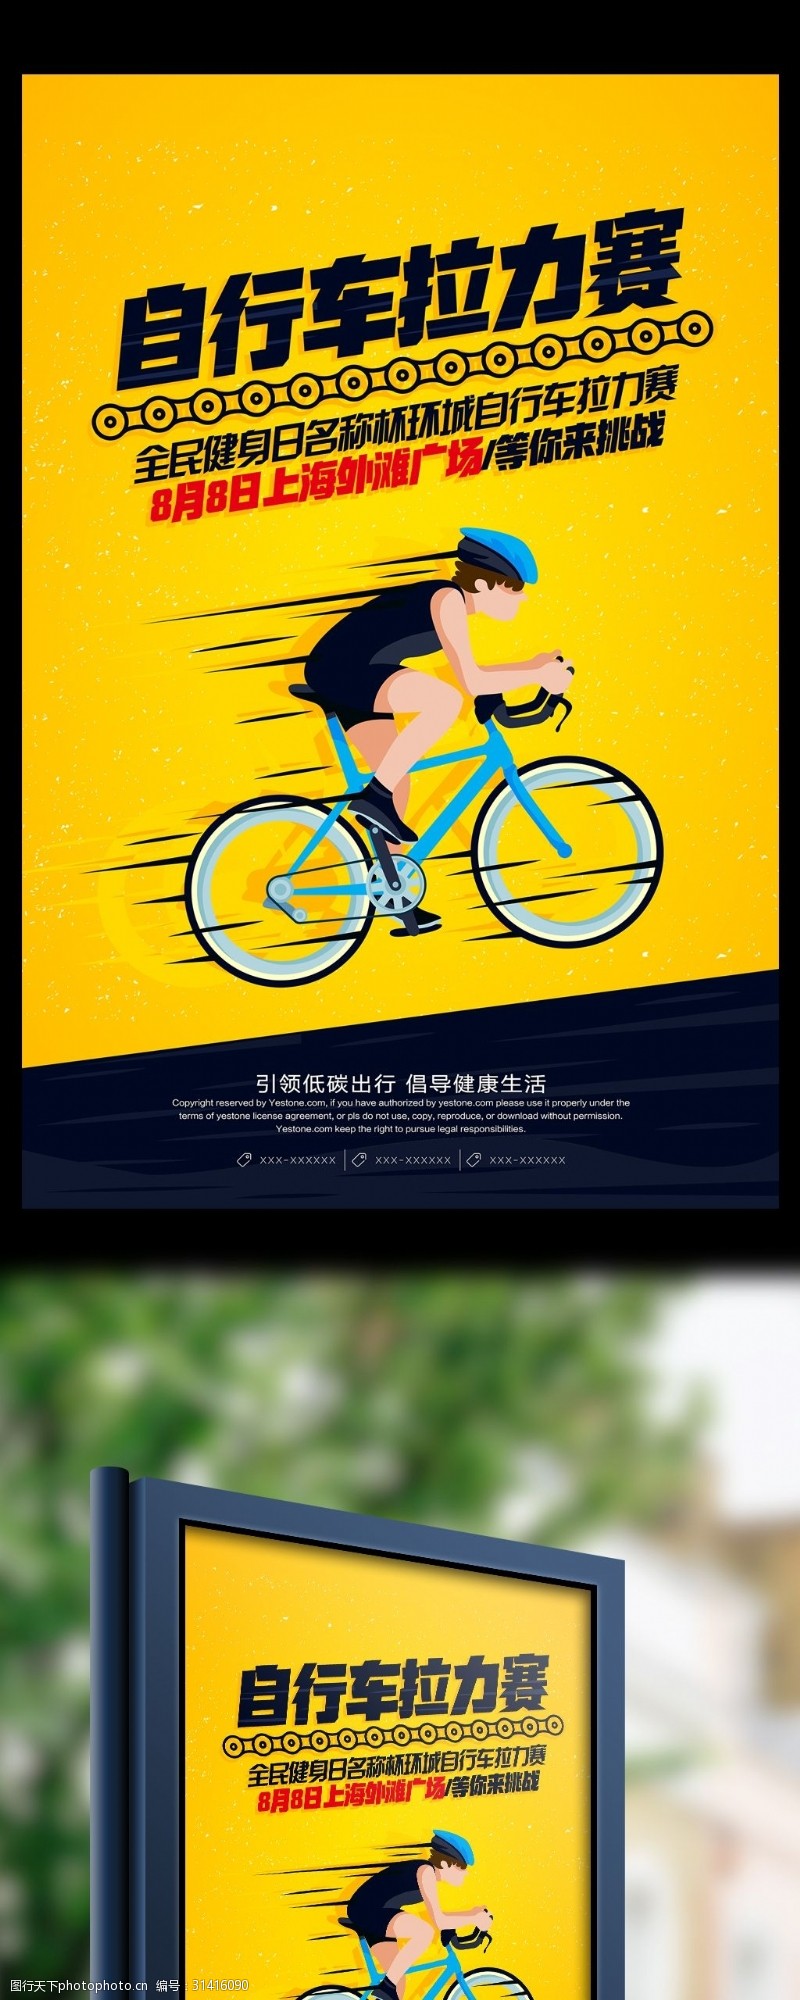 梦想青春简约自行车拉力赛体育活动宣传海报